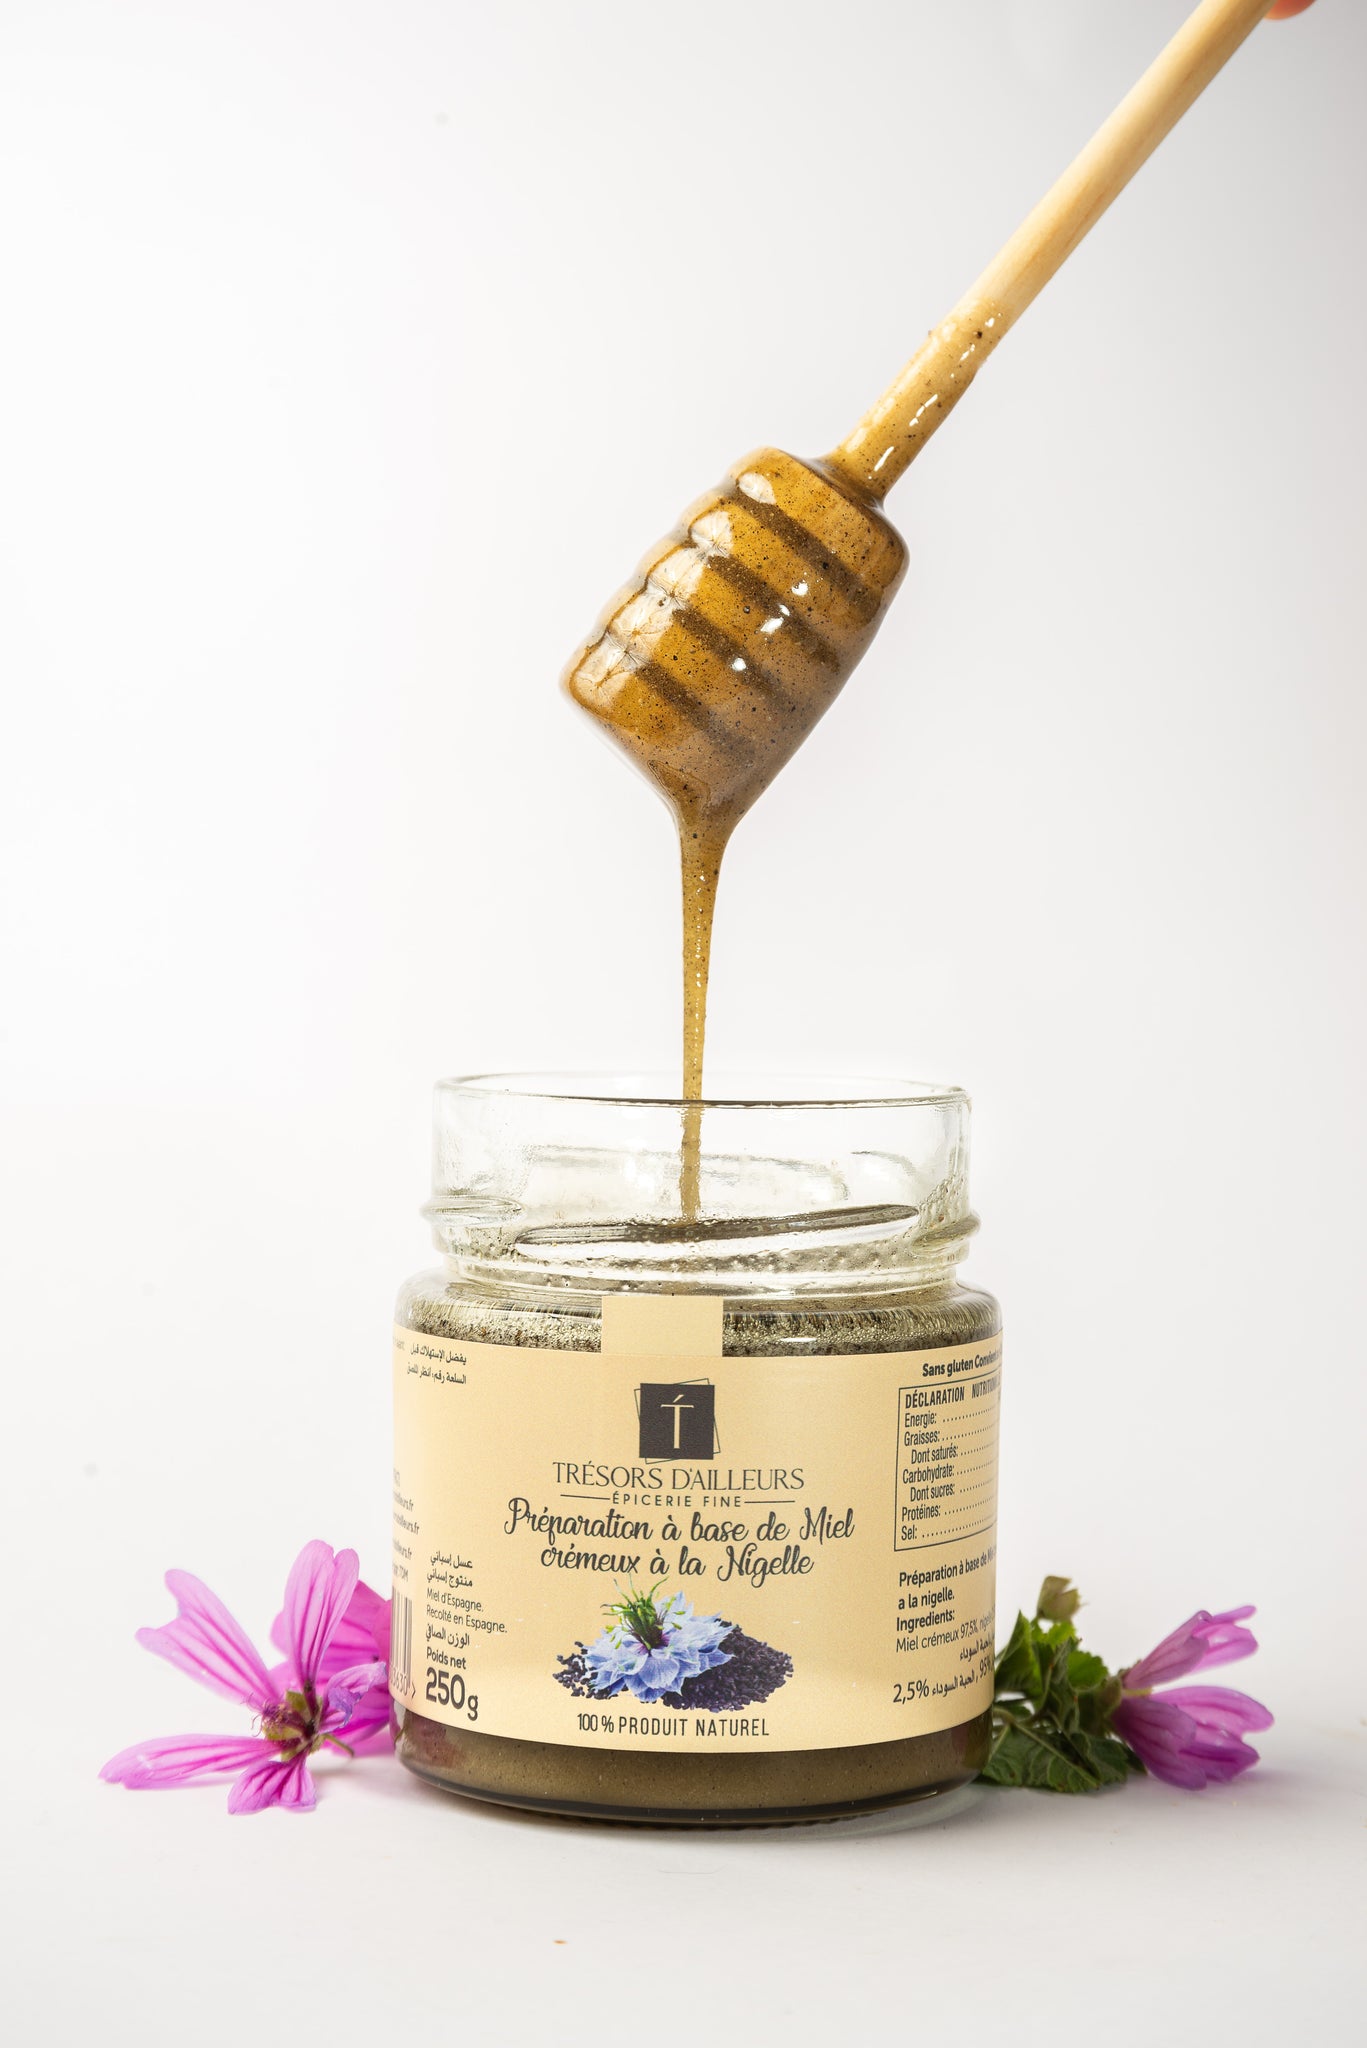 Miel crémeux à la Nigelle 250g – Tresors d'Ailleurs